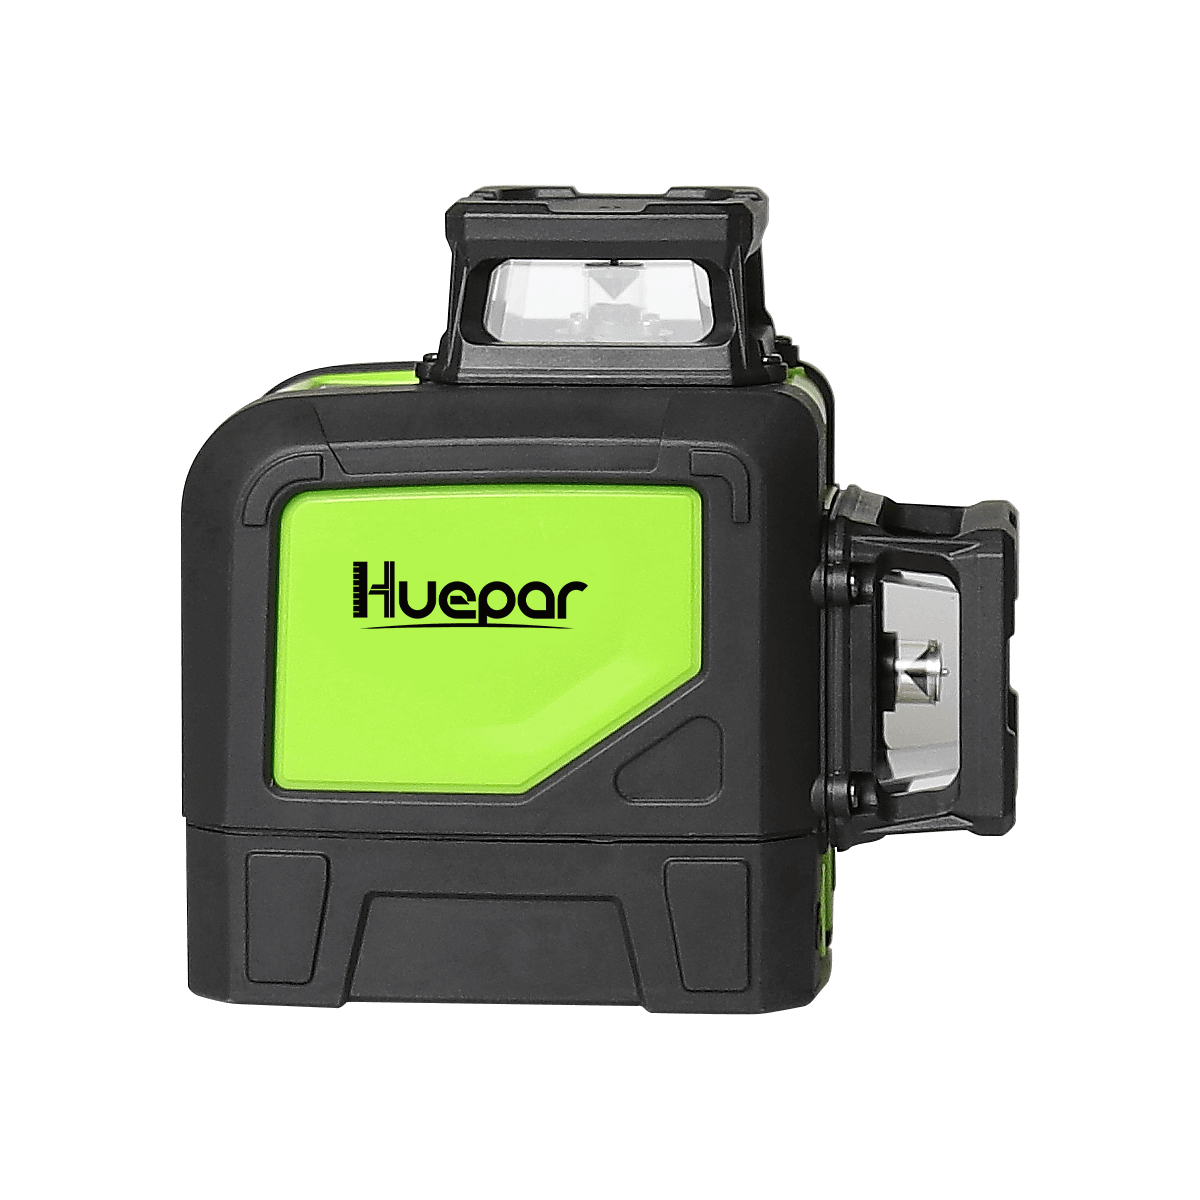 Huepar 602CG - Laser Level for Cabinets - Huepar